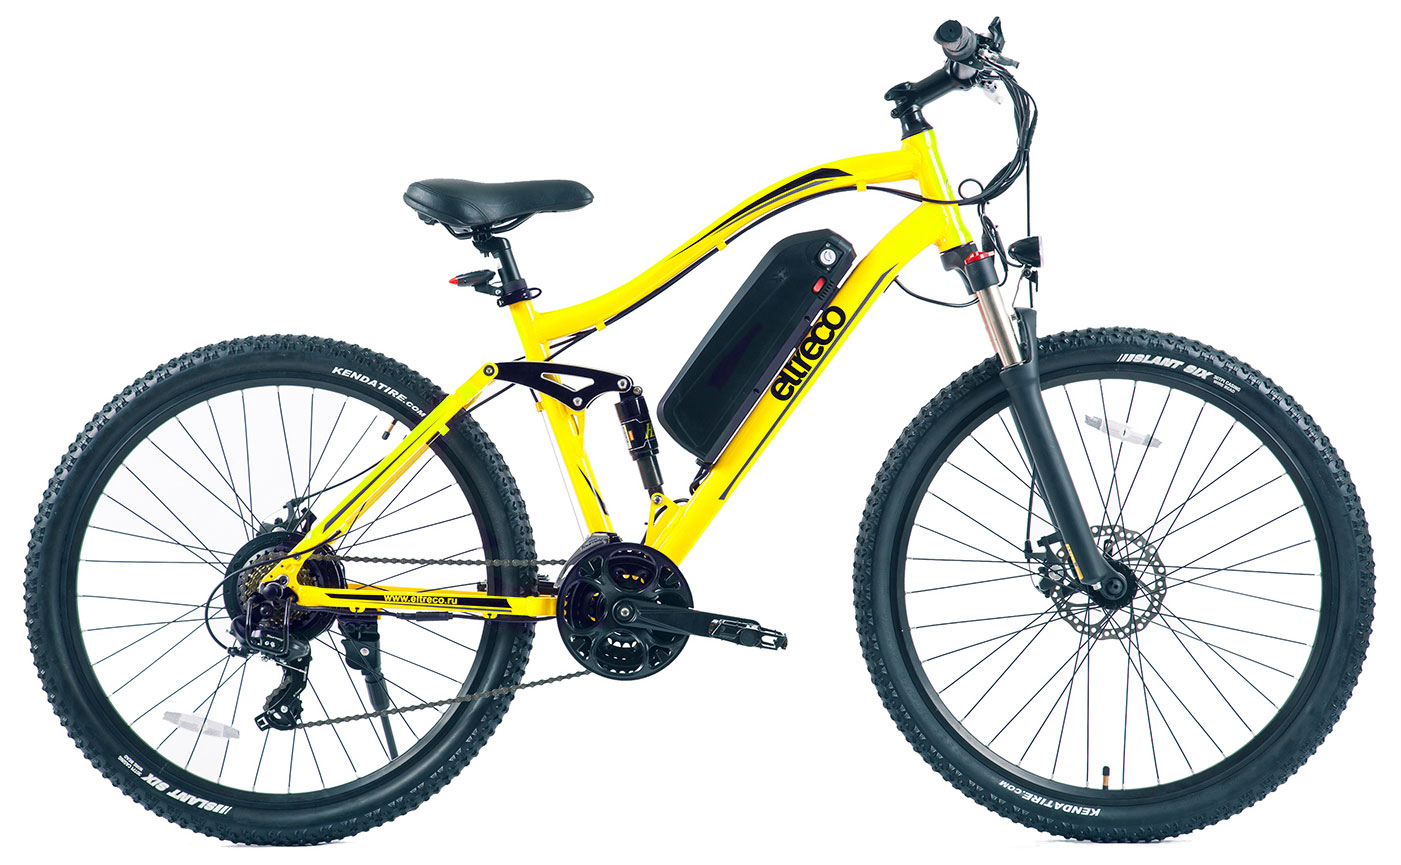  Отзывы о Электровелосипеде Eltreco FS-900 27,5 2018